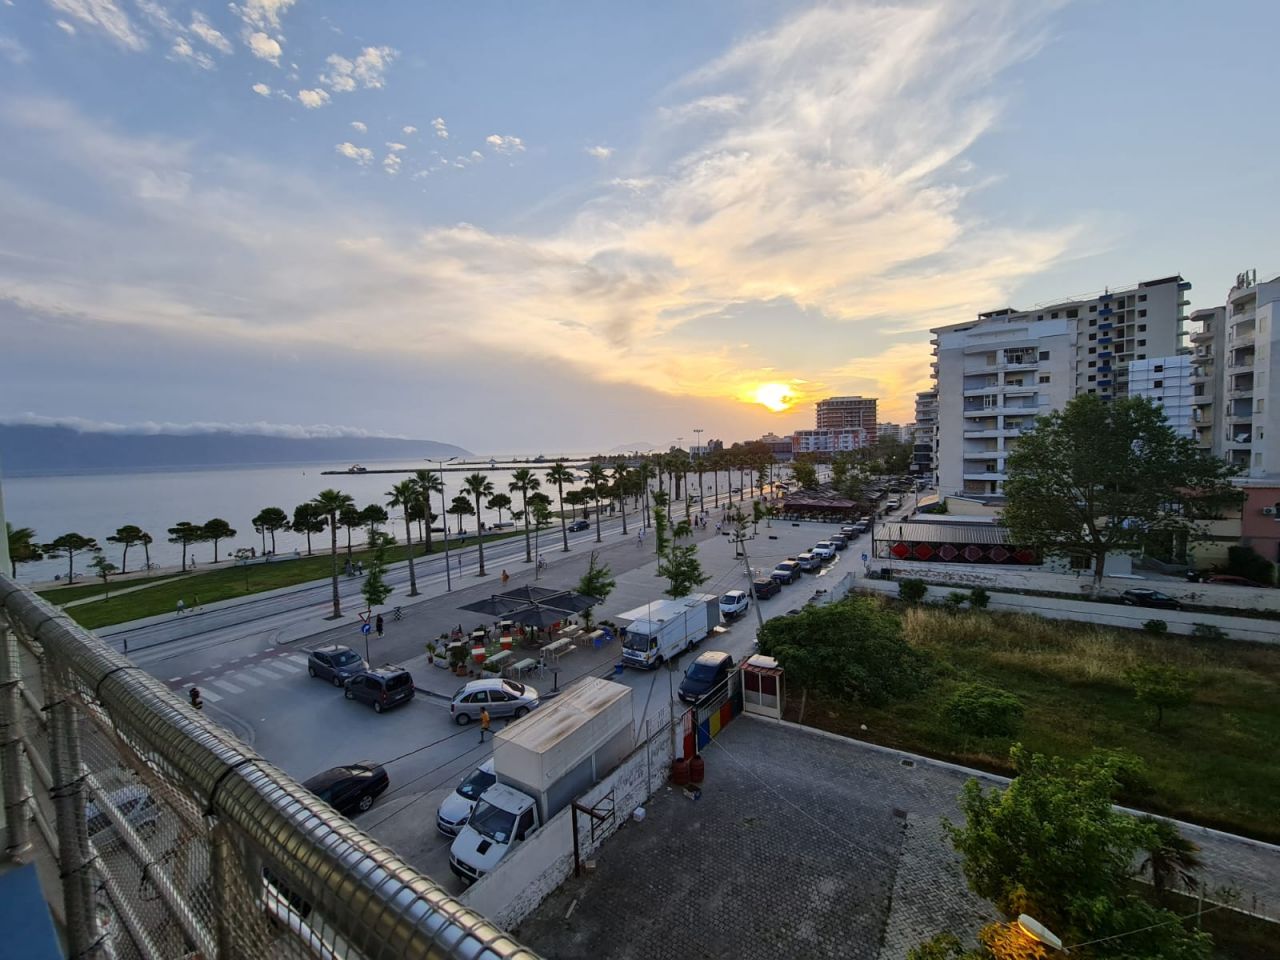 Nyaraló bérelhető apartman Vlorában, kilátással a tengerre